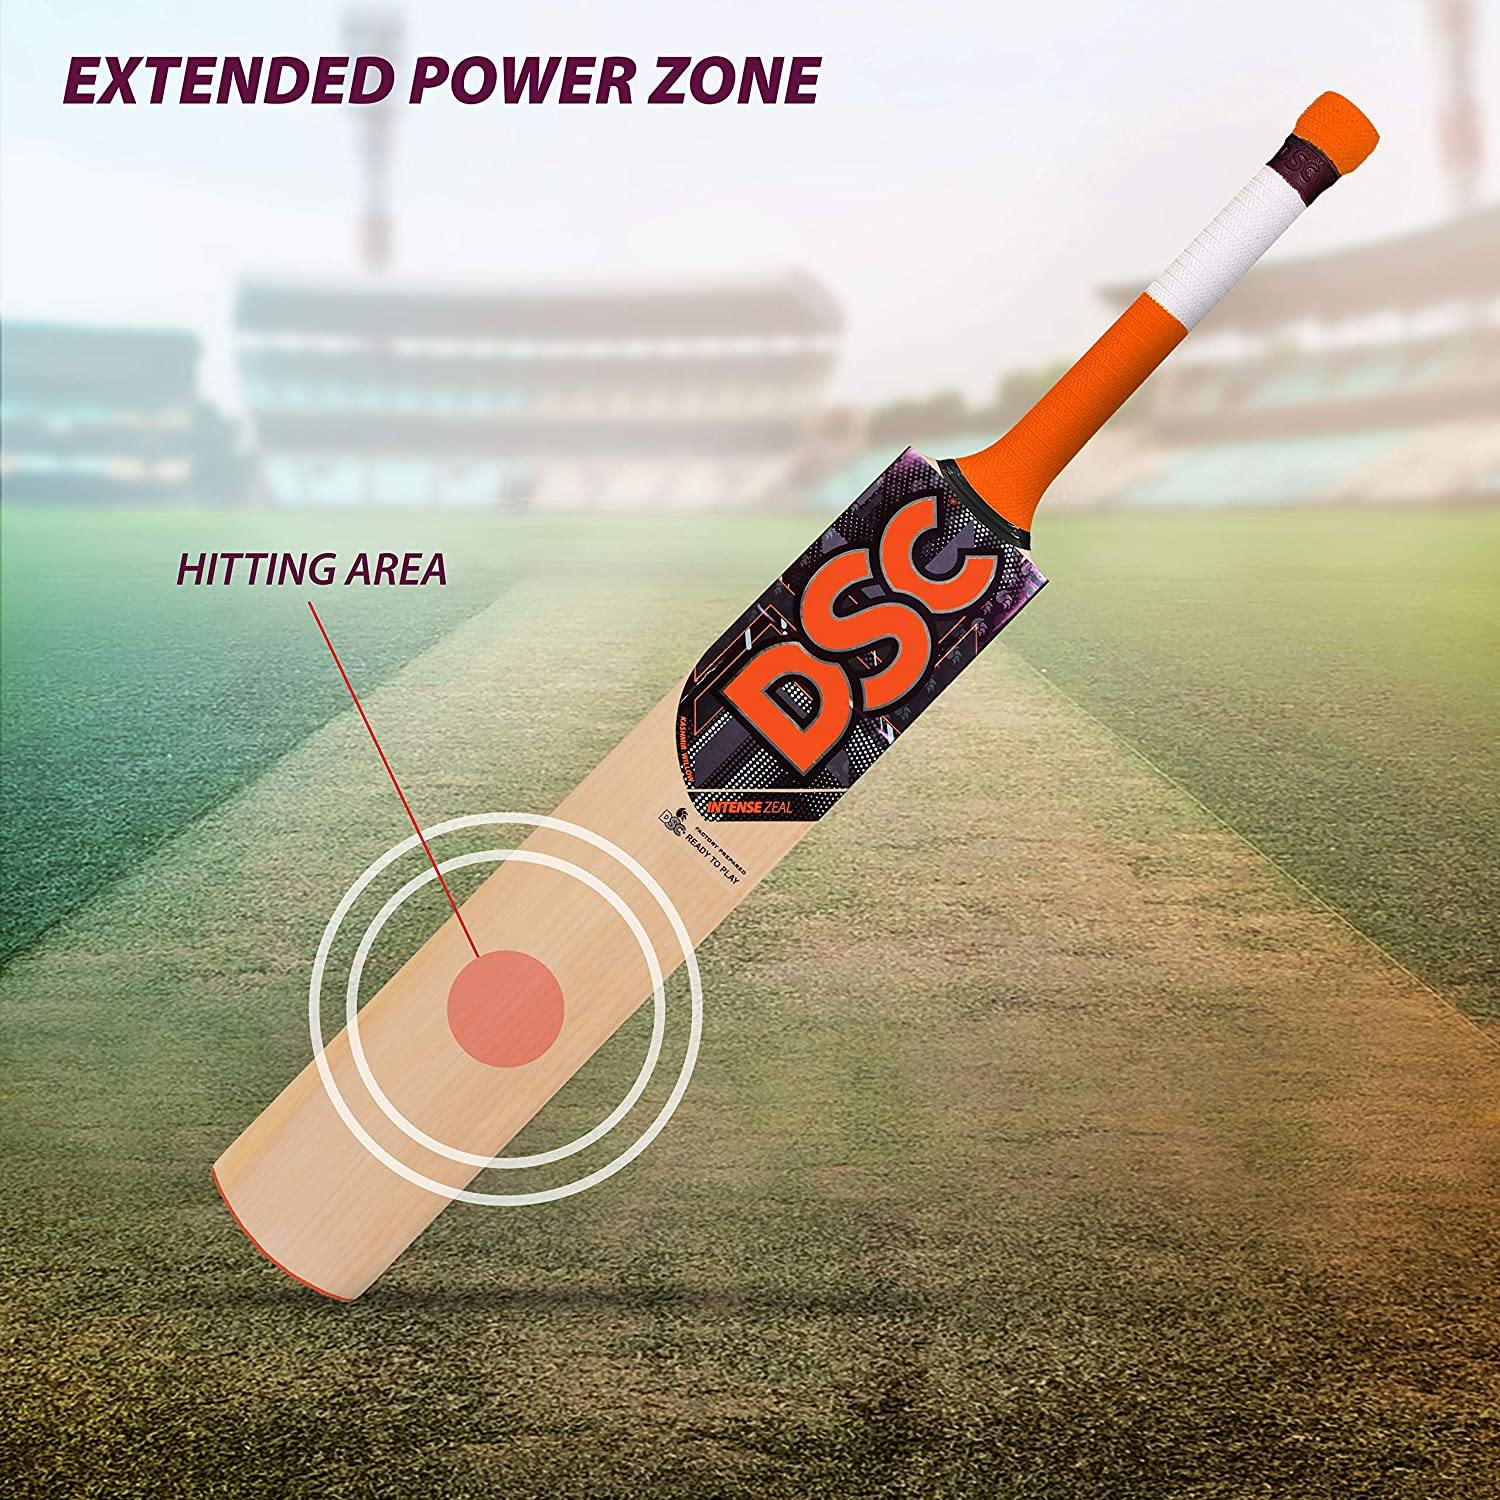 DSC Intense Zeal Kashmir Willow Cricket Bat - Best Price online Prokicksports.com